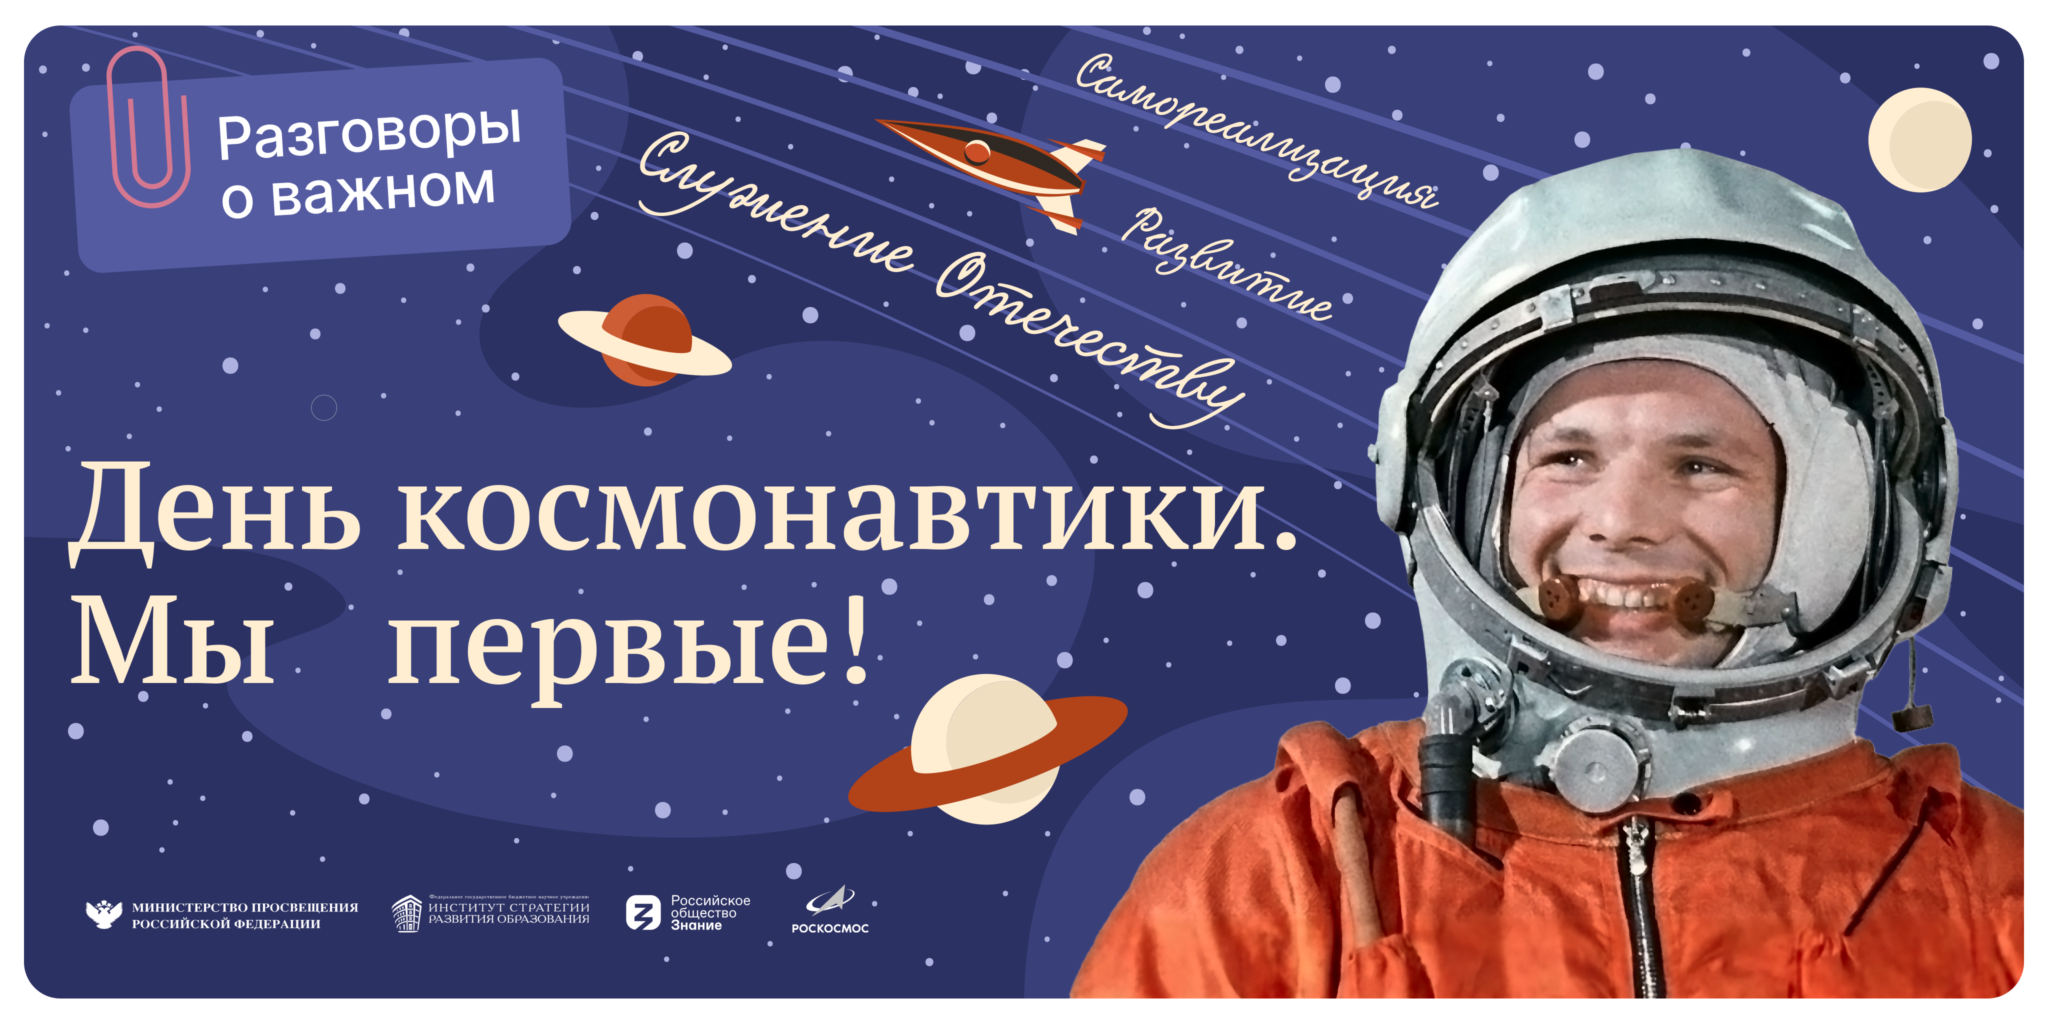 Какой праздник отмечают 12 апреля. День космонавтики. Праздник день космонавтики. Плакат "день космонавтики". День космонавтики Плакаи.